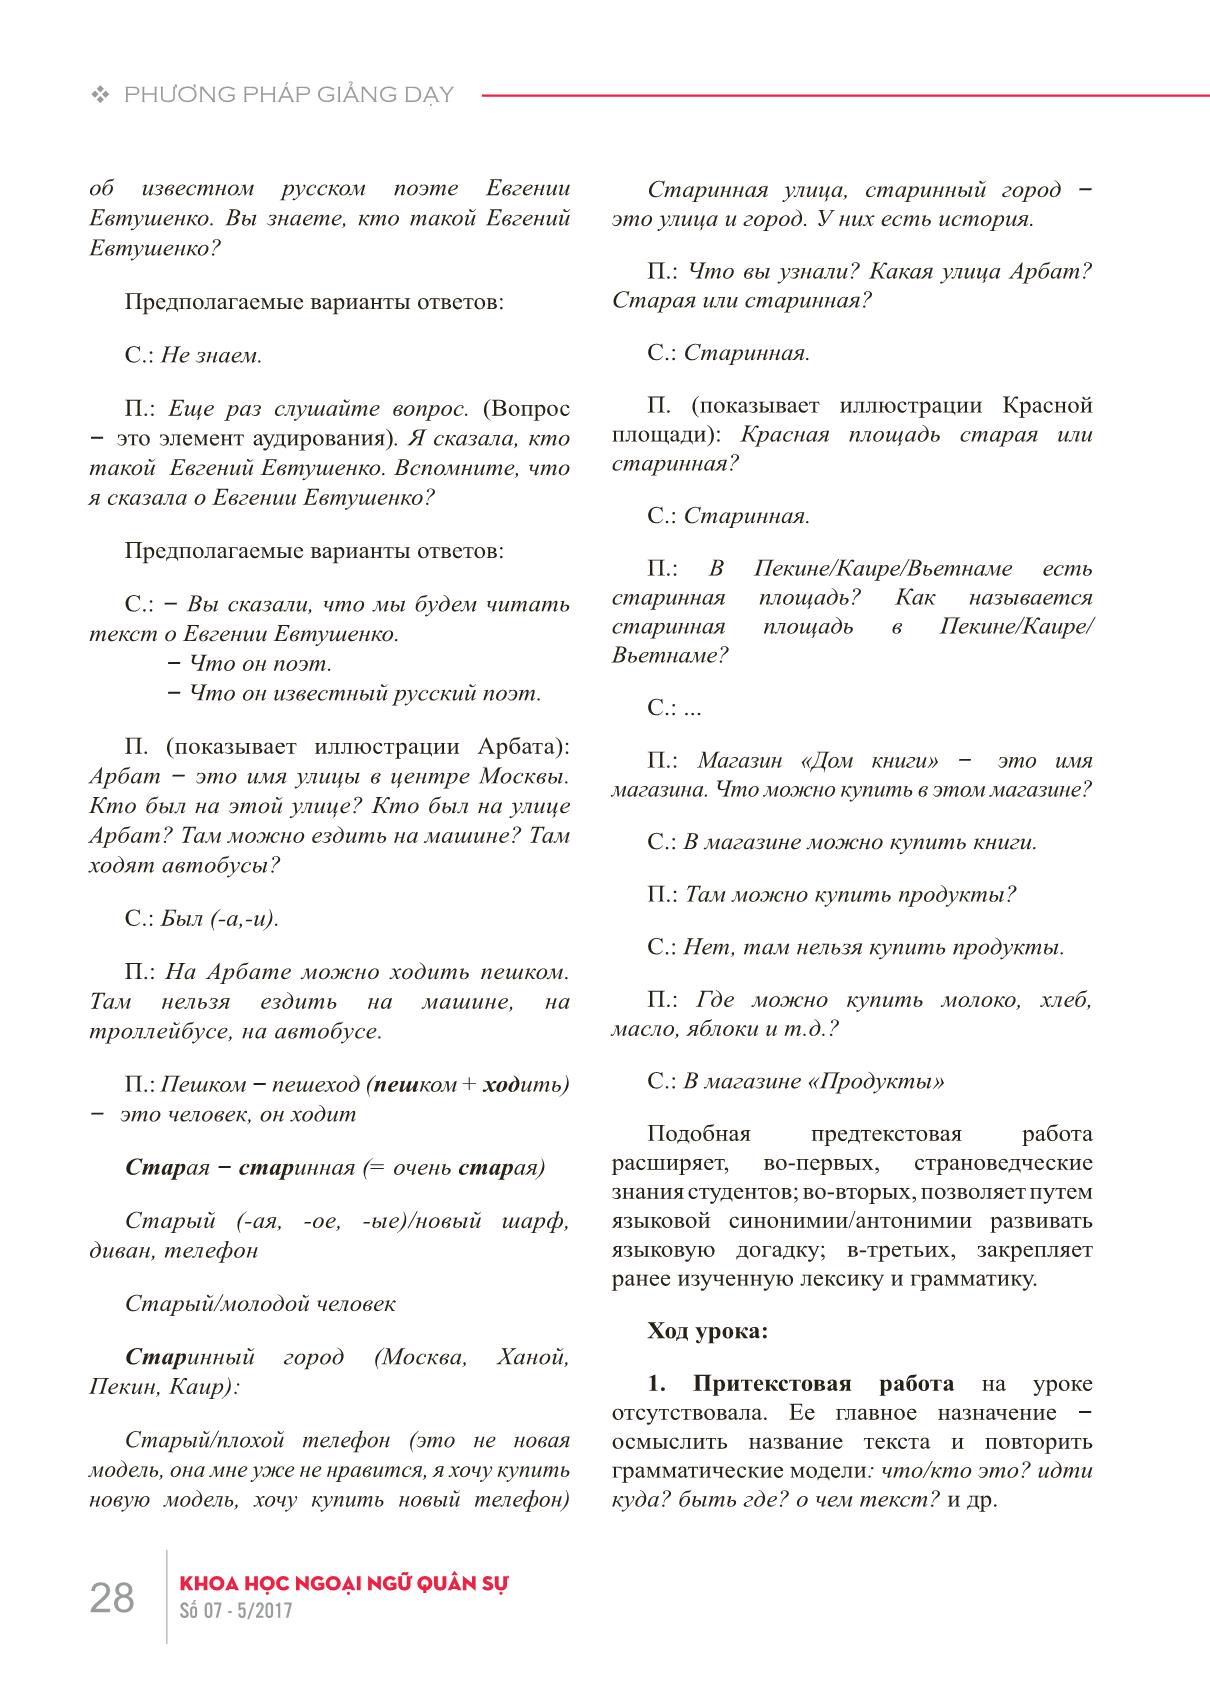 Các lỗi về phương pháp giảng dạy khi xử lý văn bản trong giờ dạy tiếng Nga như một ngoại ngữ trang 3